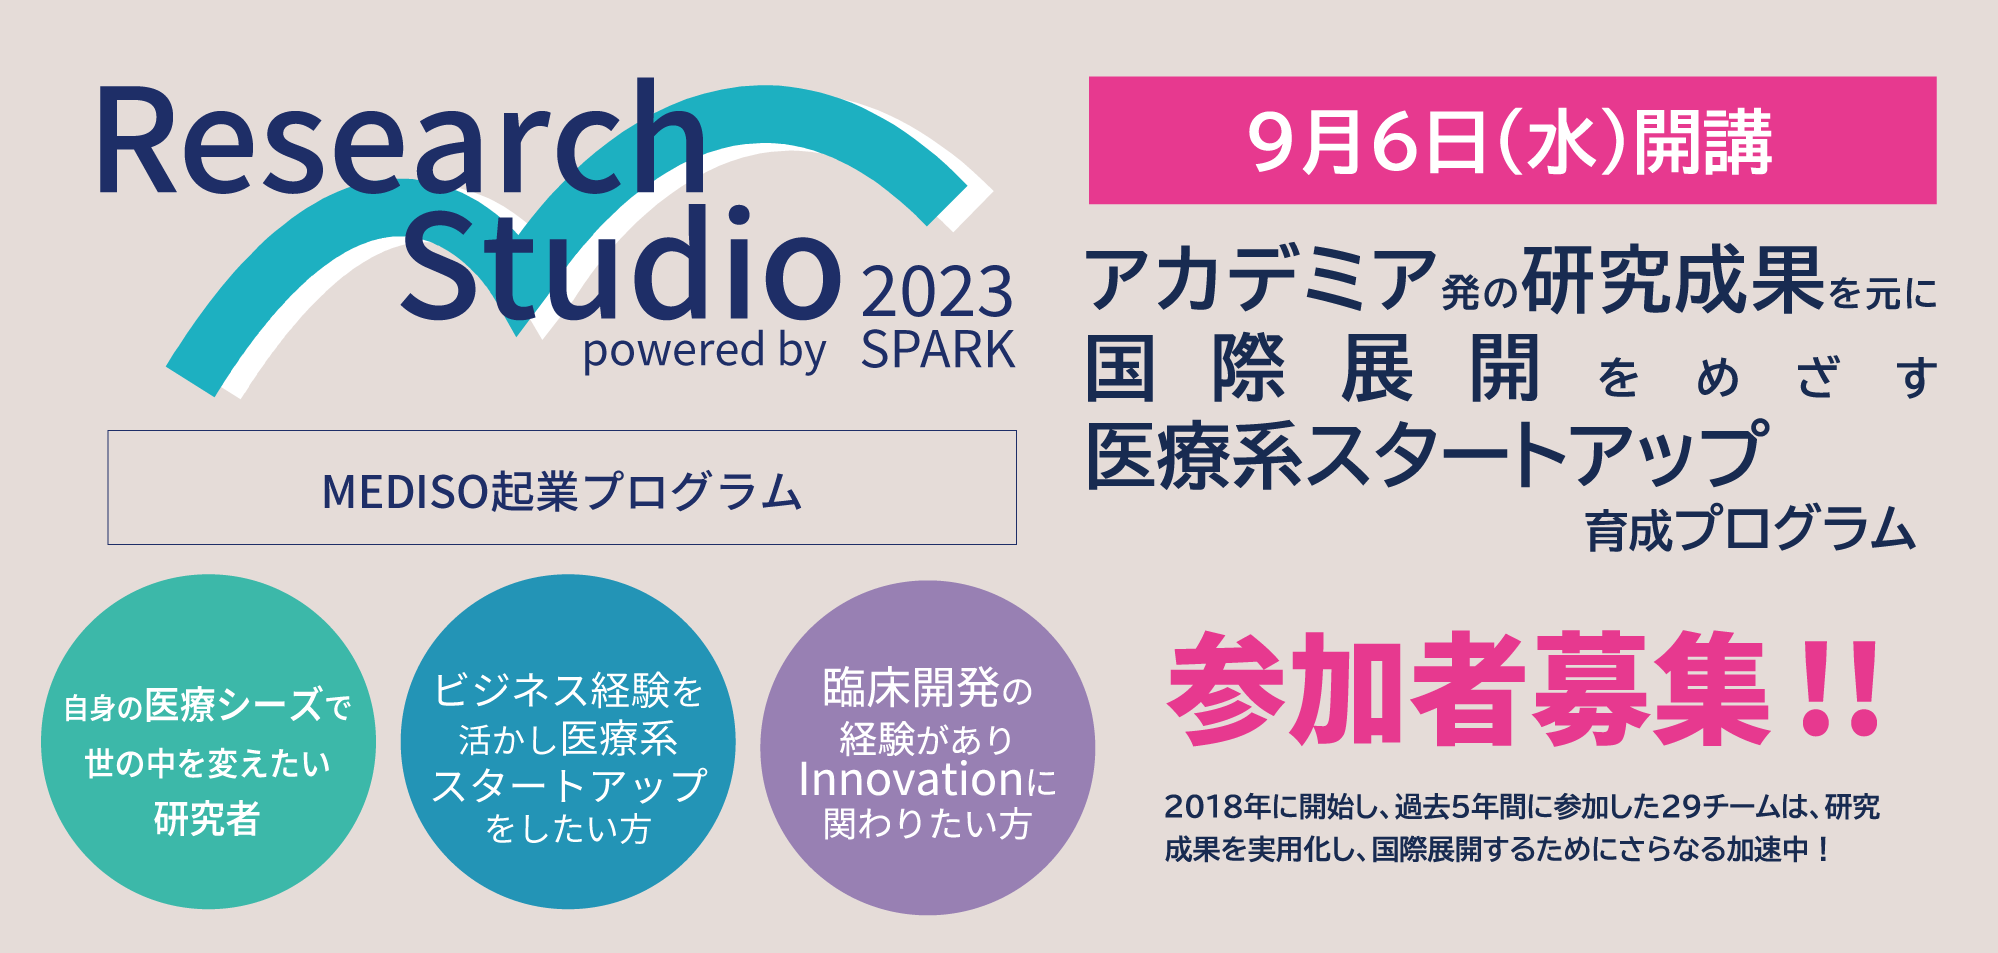 8/10 〆切】Research Studio 2023 参加者募集 | 千葉大スタートアップ ...